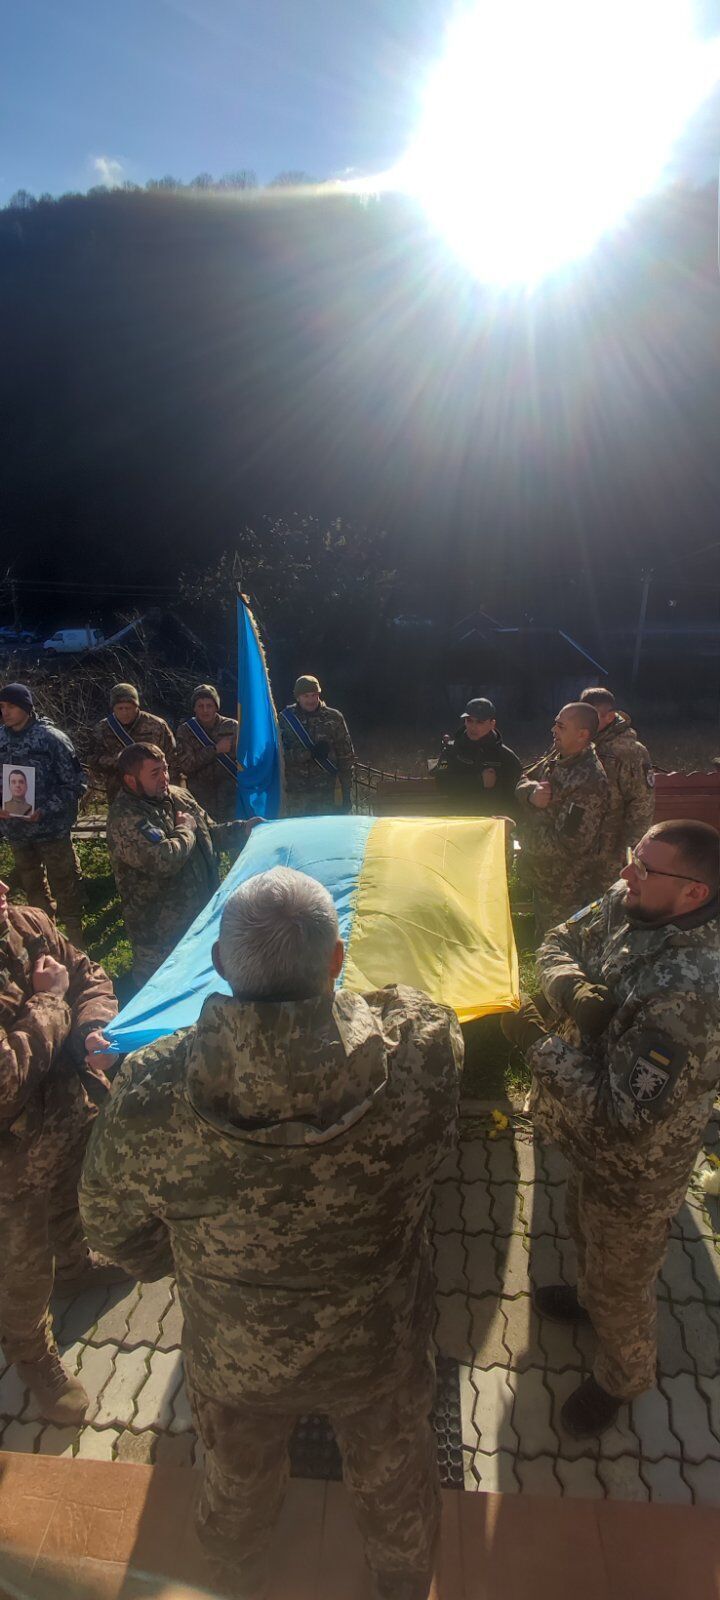 "Був вірним присязі до останньої хвилини": в боях за Україну загинув захисник із Закарпаття. Фото